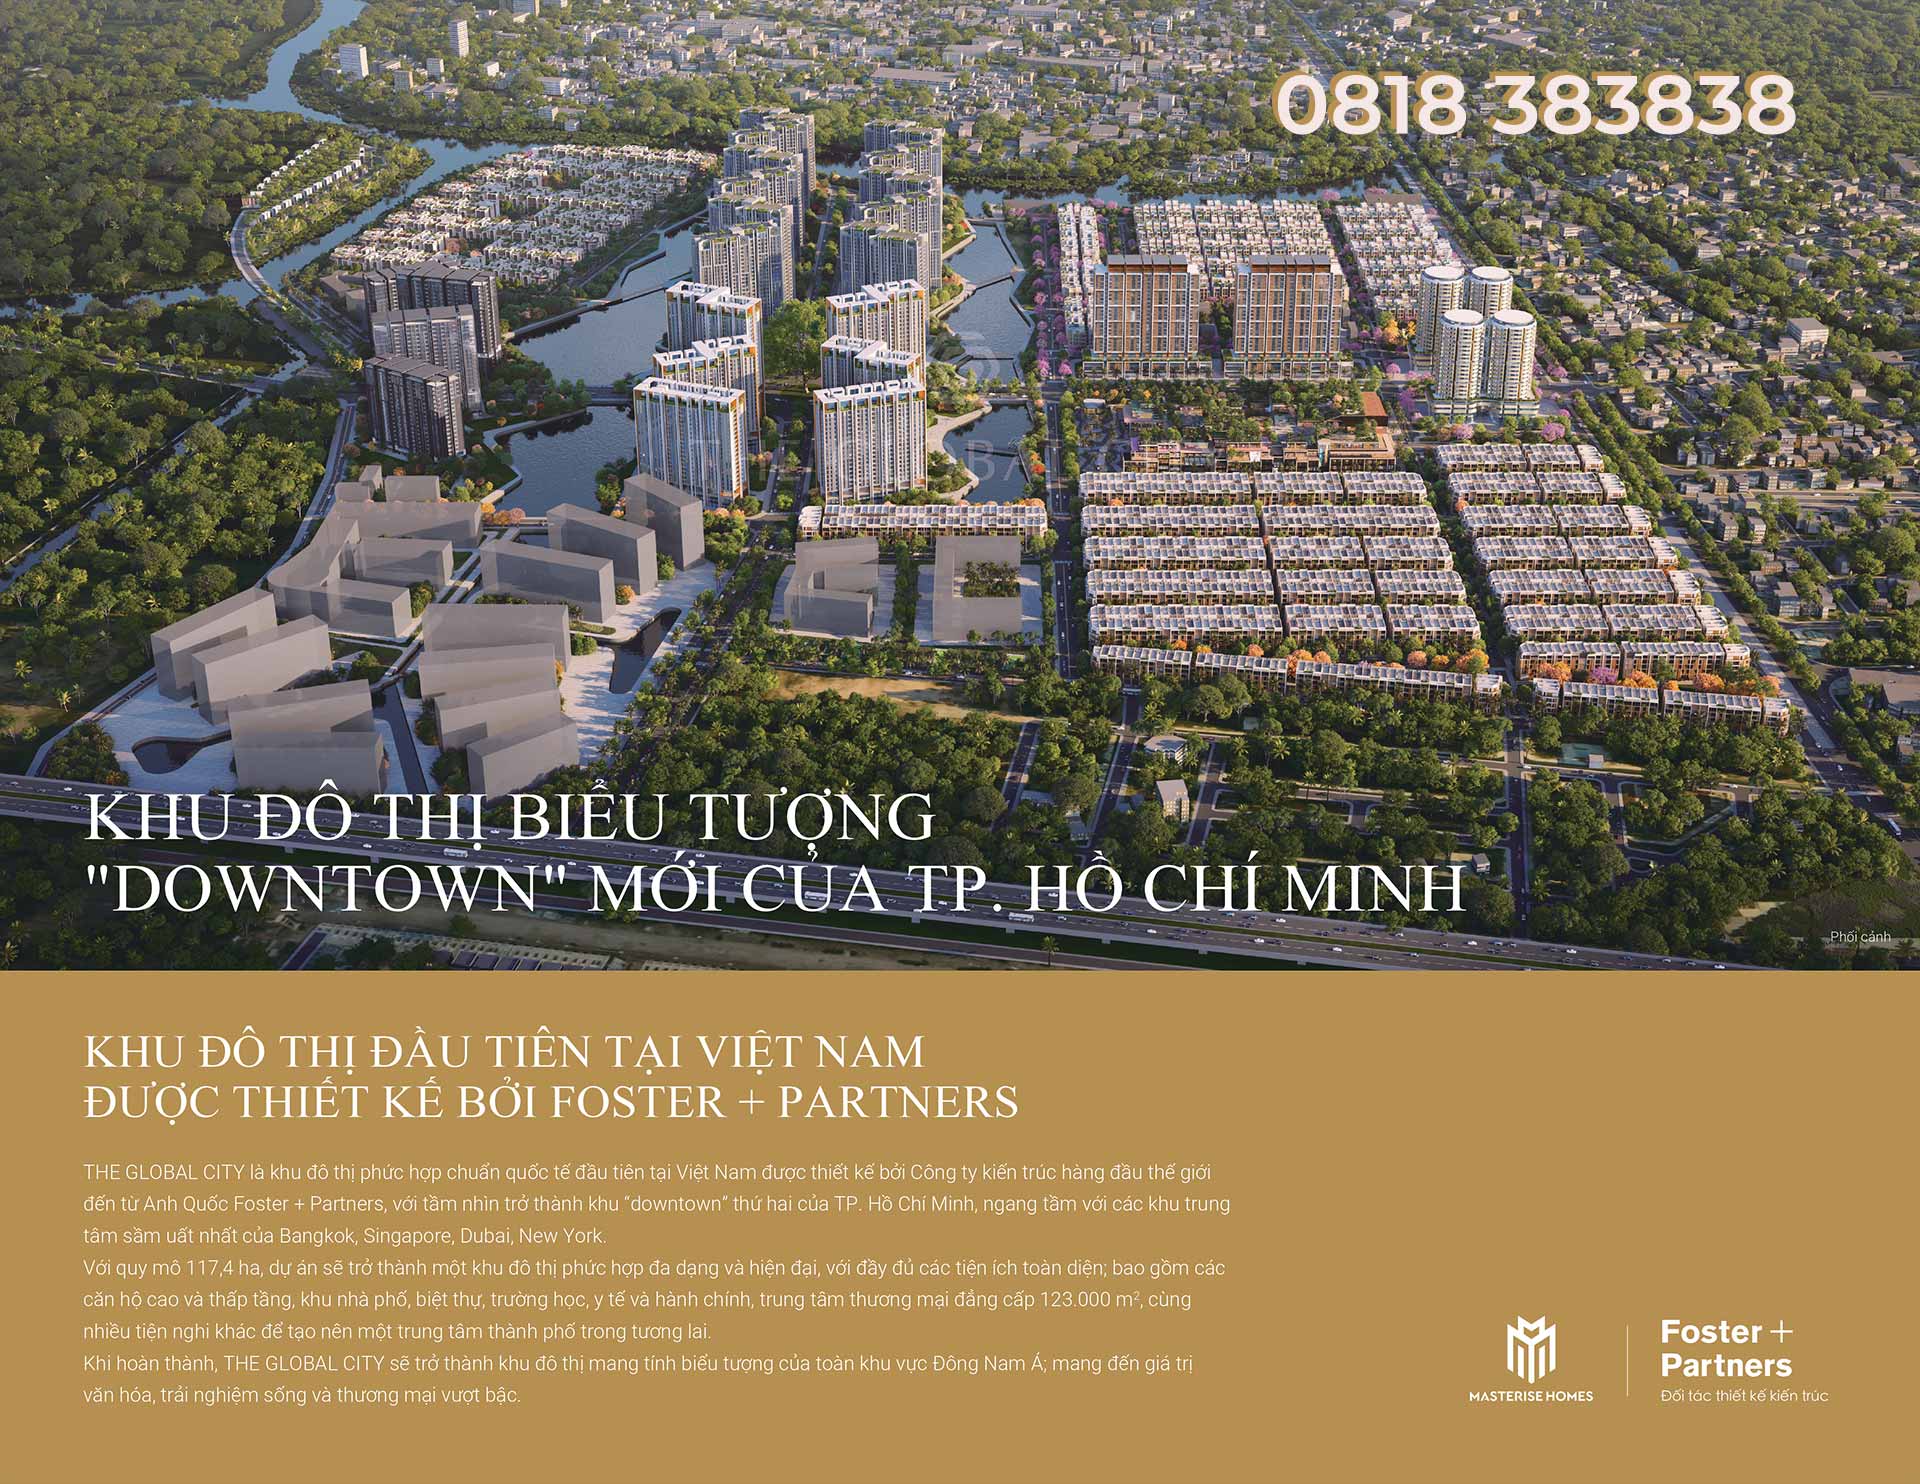 Dự án The City - Khu đô thị biểu tượng mới Tp Hồ Chí Minh. Dự án quy mô lớn, phát triển thấp tầng nhà phố biệt thự và căn hộ tại trung tâm khu đô thị Thành phố Thủ Đức.